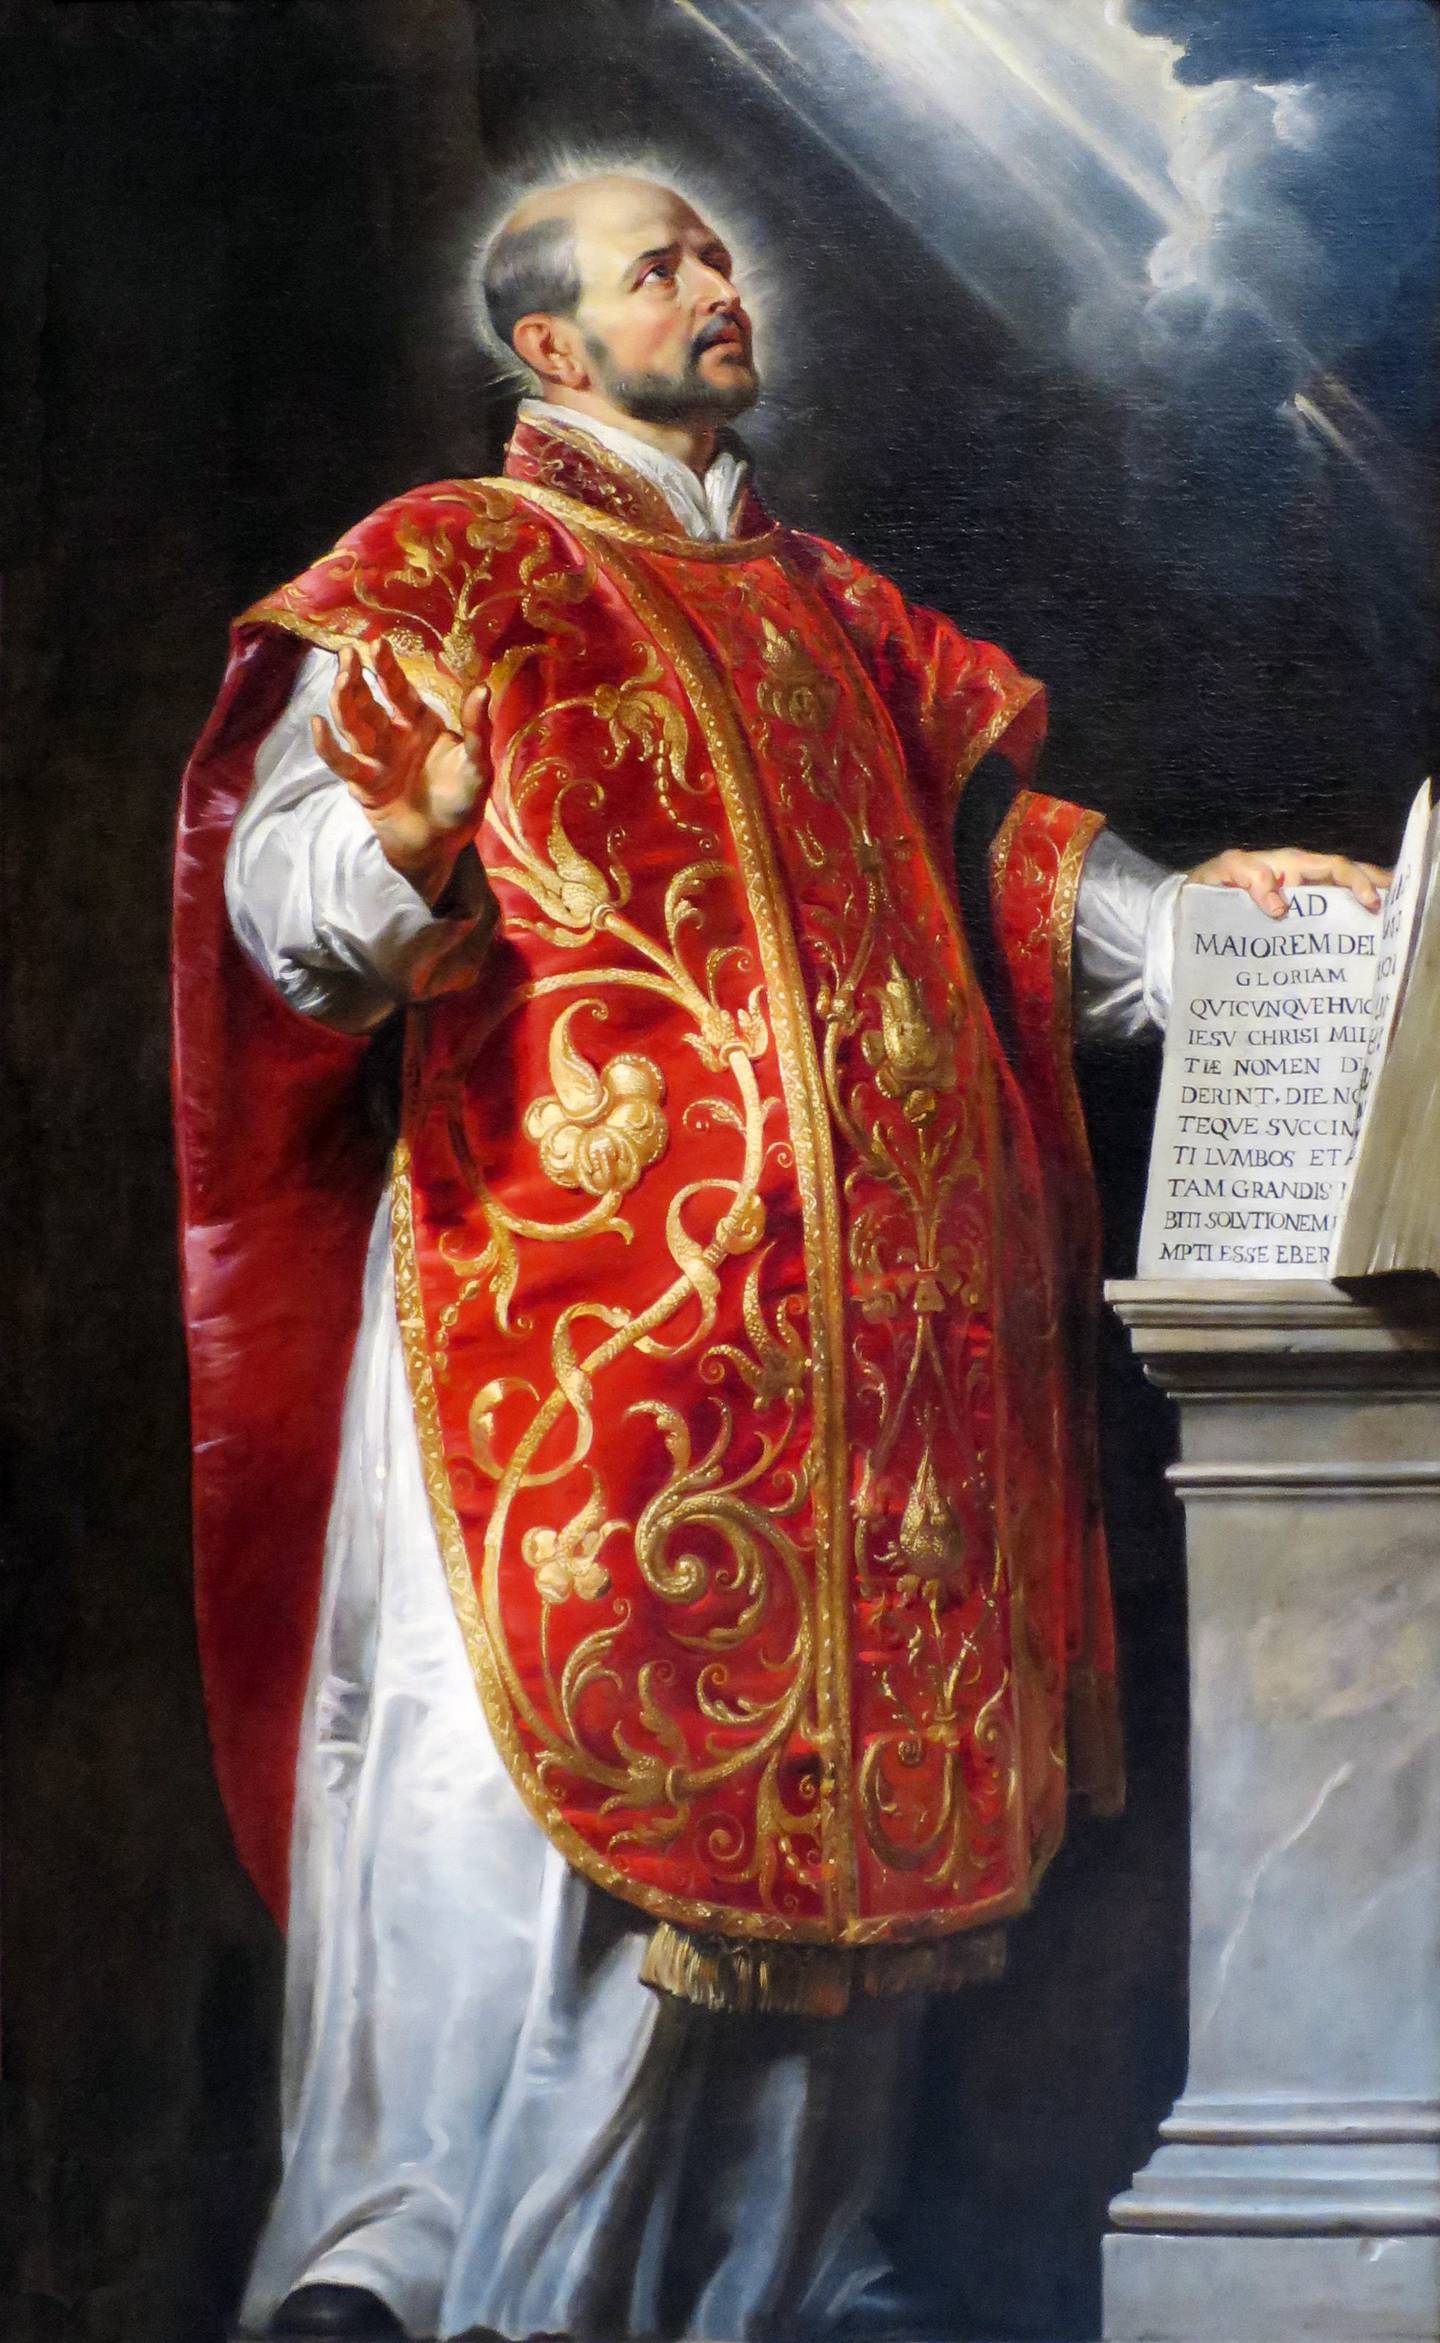 Ignatius av Loyola fremstilt av Peter Paul Rubens (1577-1640).